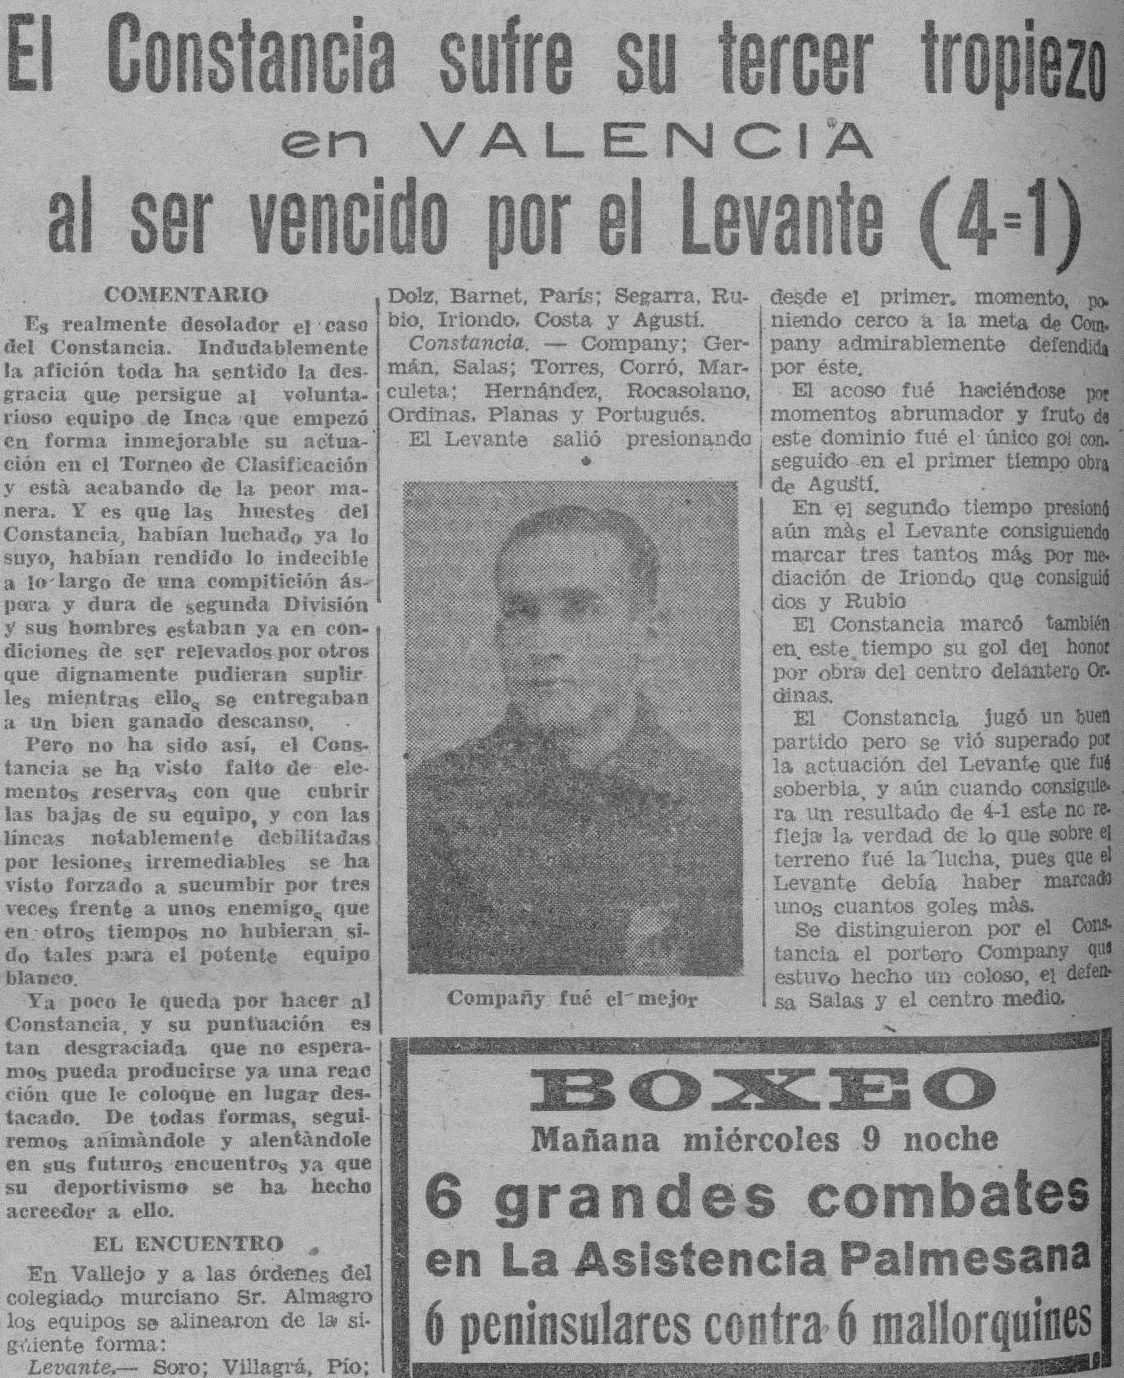 1942.03.08 (8 марта 1941), Леванте - Констанция, 4-1.jpg